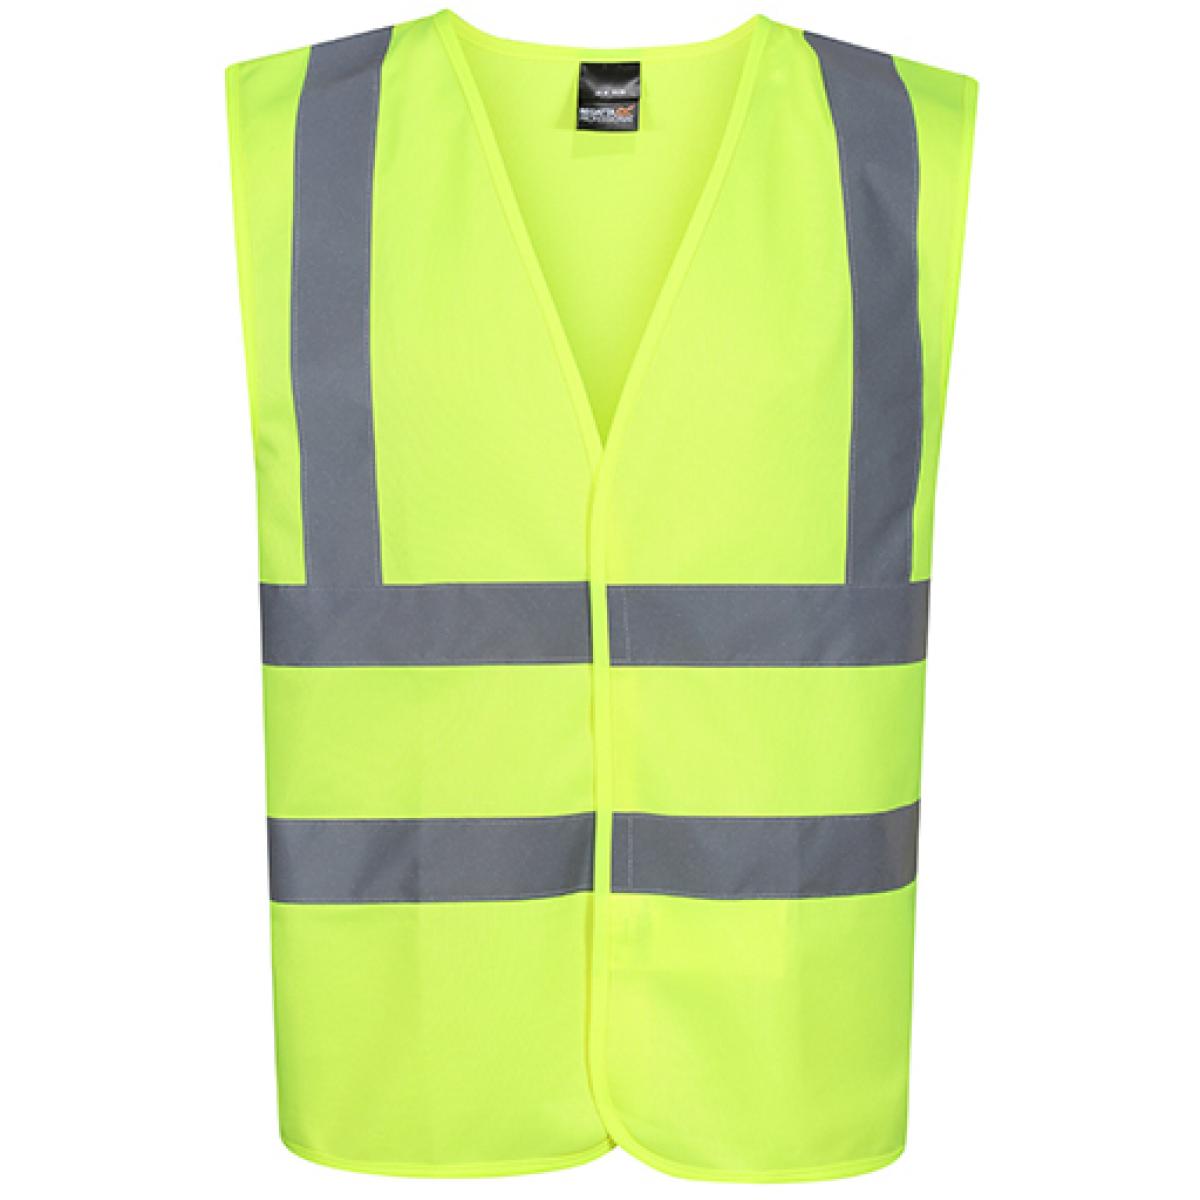 Hersteller: Regatta High Visibility Herstellernummer: TRS195 Artikelbezeichnung: Pro Hi Vis Vest - Sicherheitsveste Farbe: Yellow